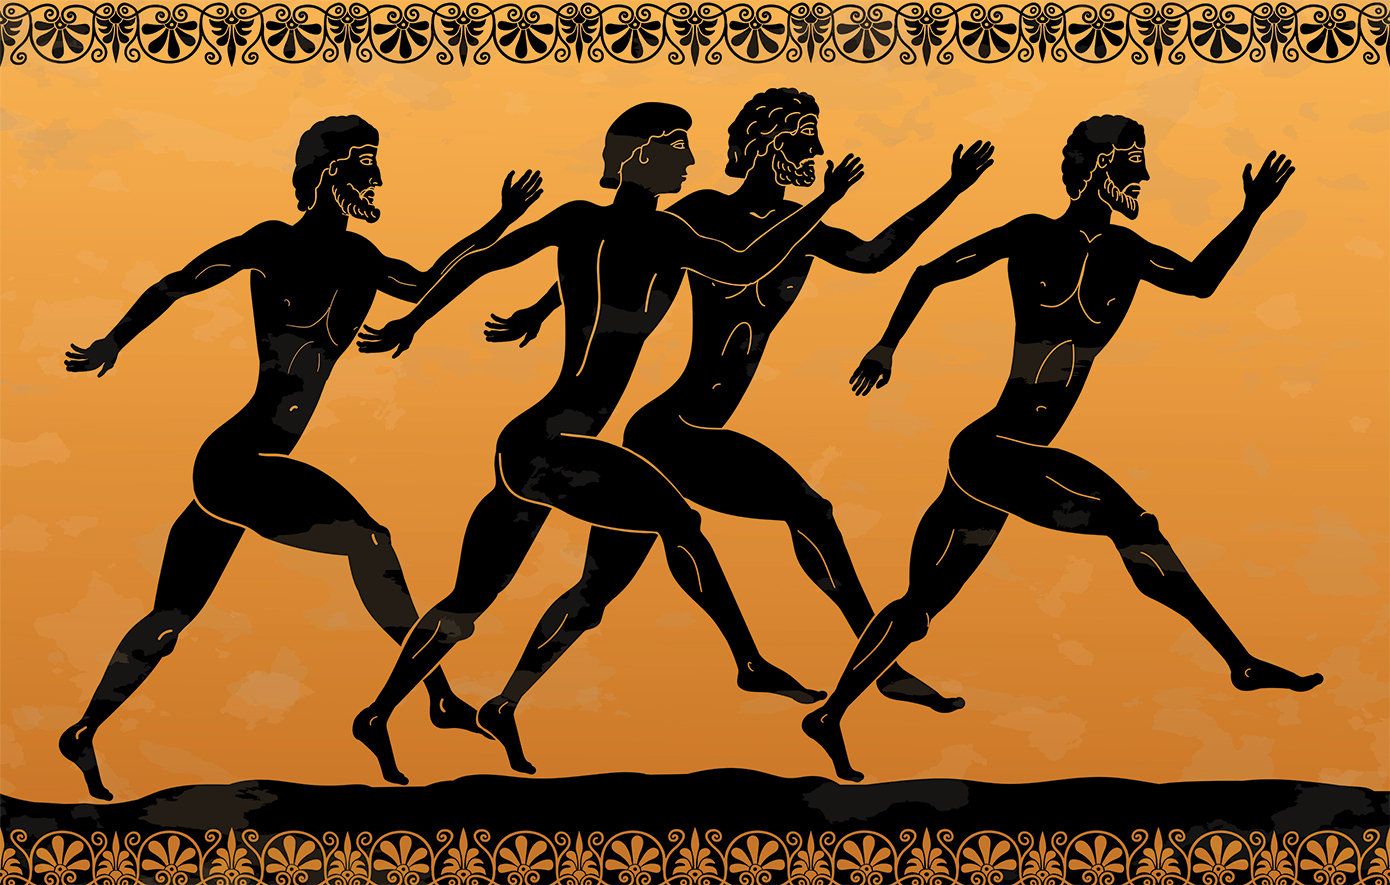 Πώς διεξάγονταν οι αρχαίοι Ολυμπιακοί Αγώνες &#8211; Η μετακίνηση των αθλητών, οι χορηγοί και τα έπαθλα στους νικητές